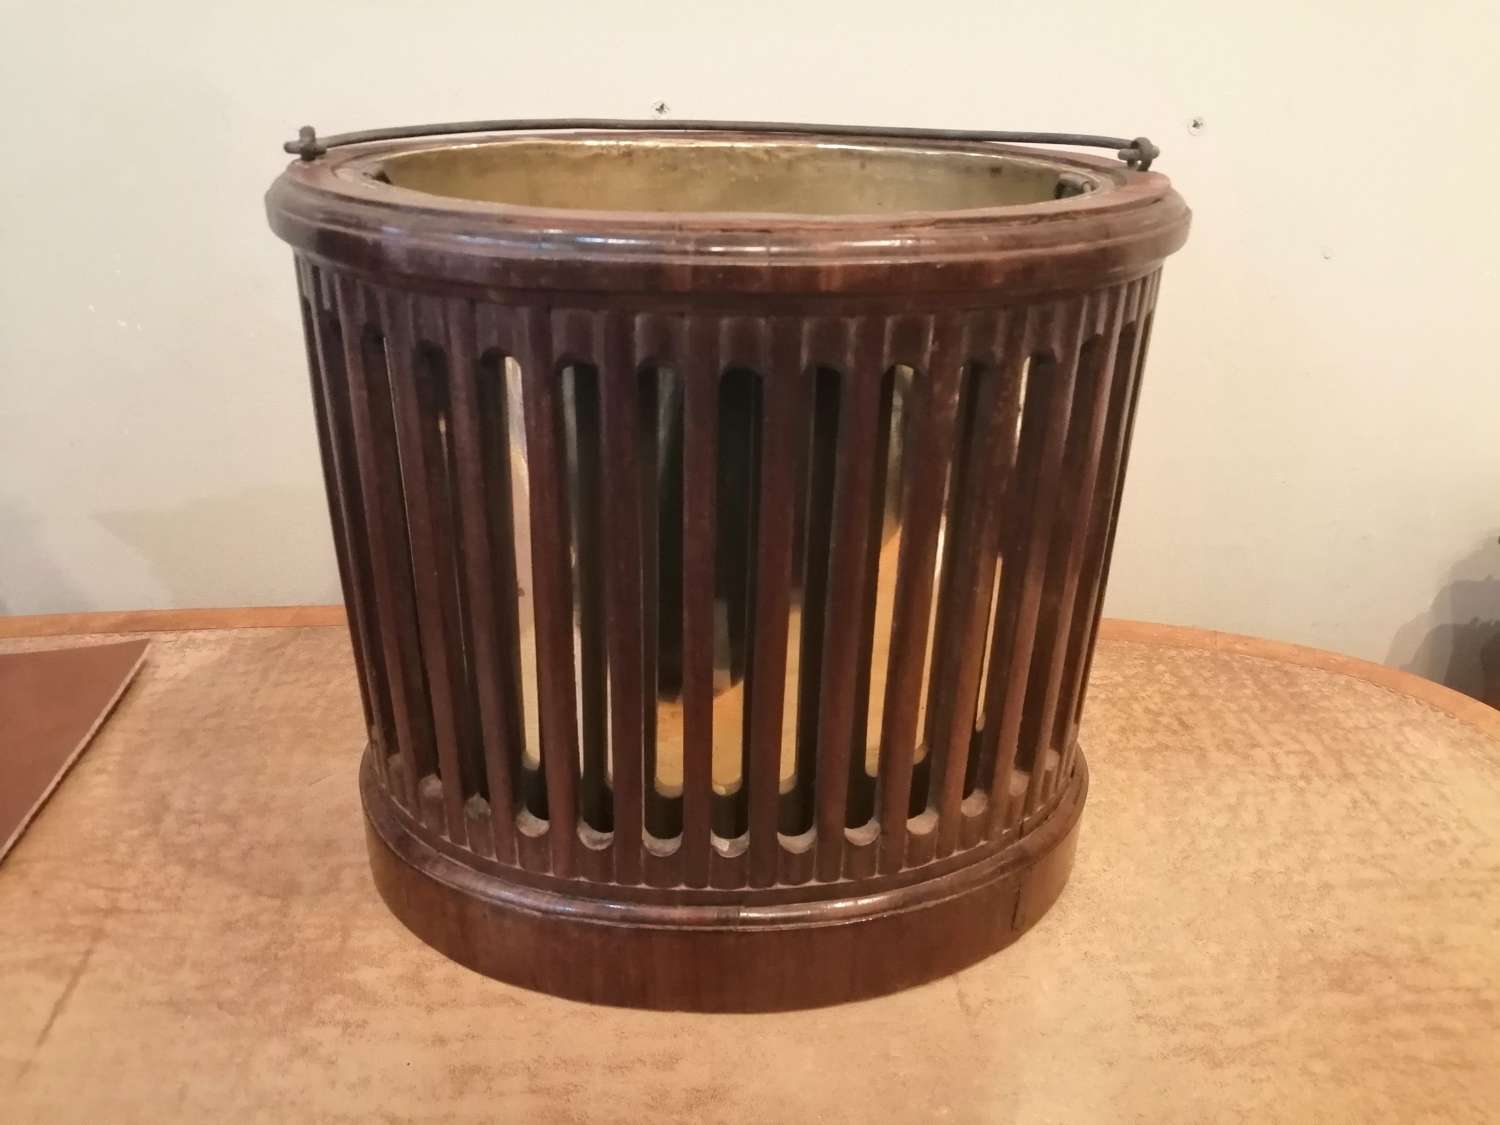 An 18th century mahogany slatted bucket